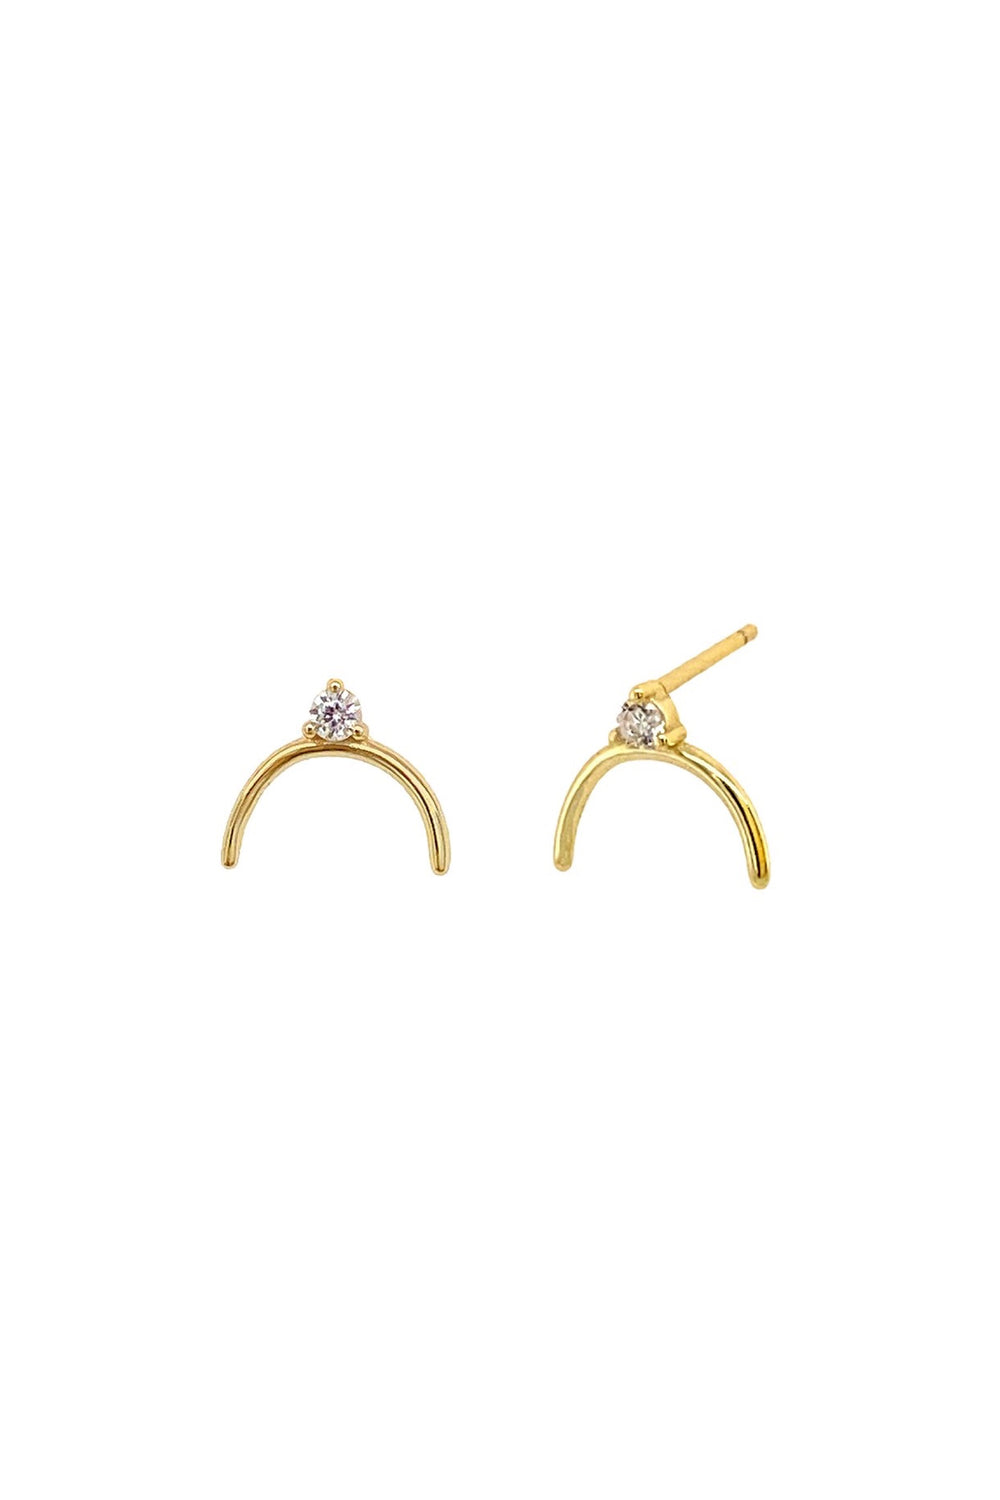 Rhinestone Evie Earrings